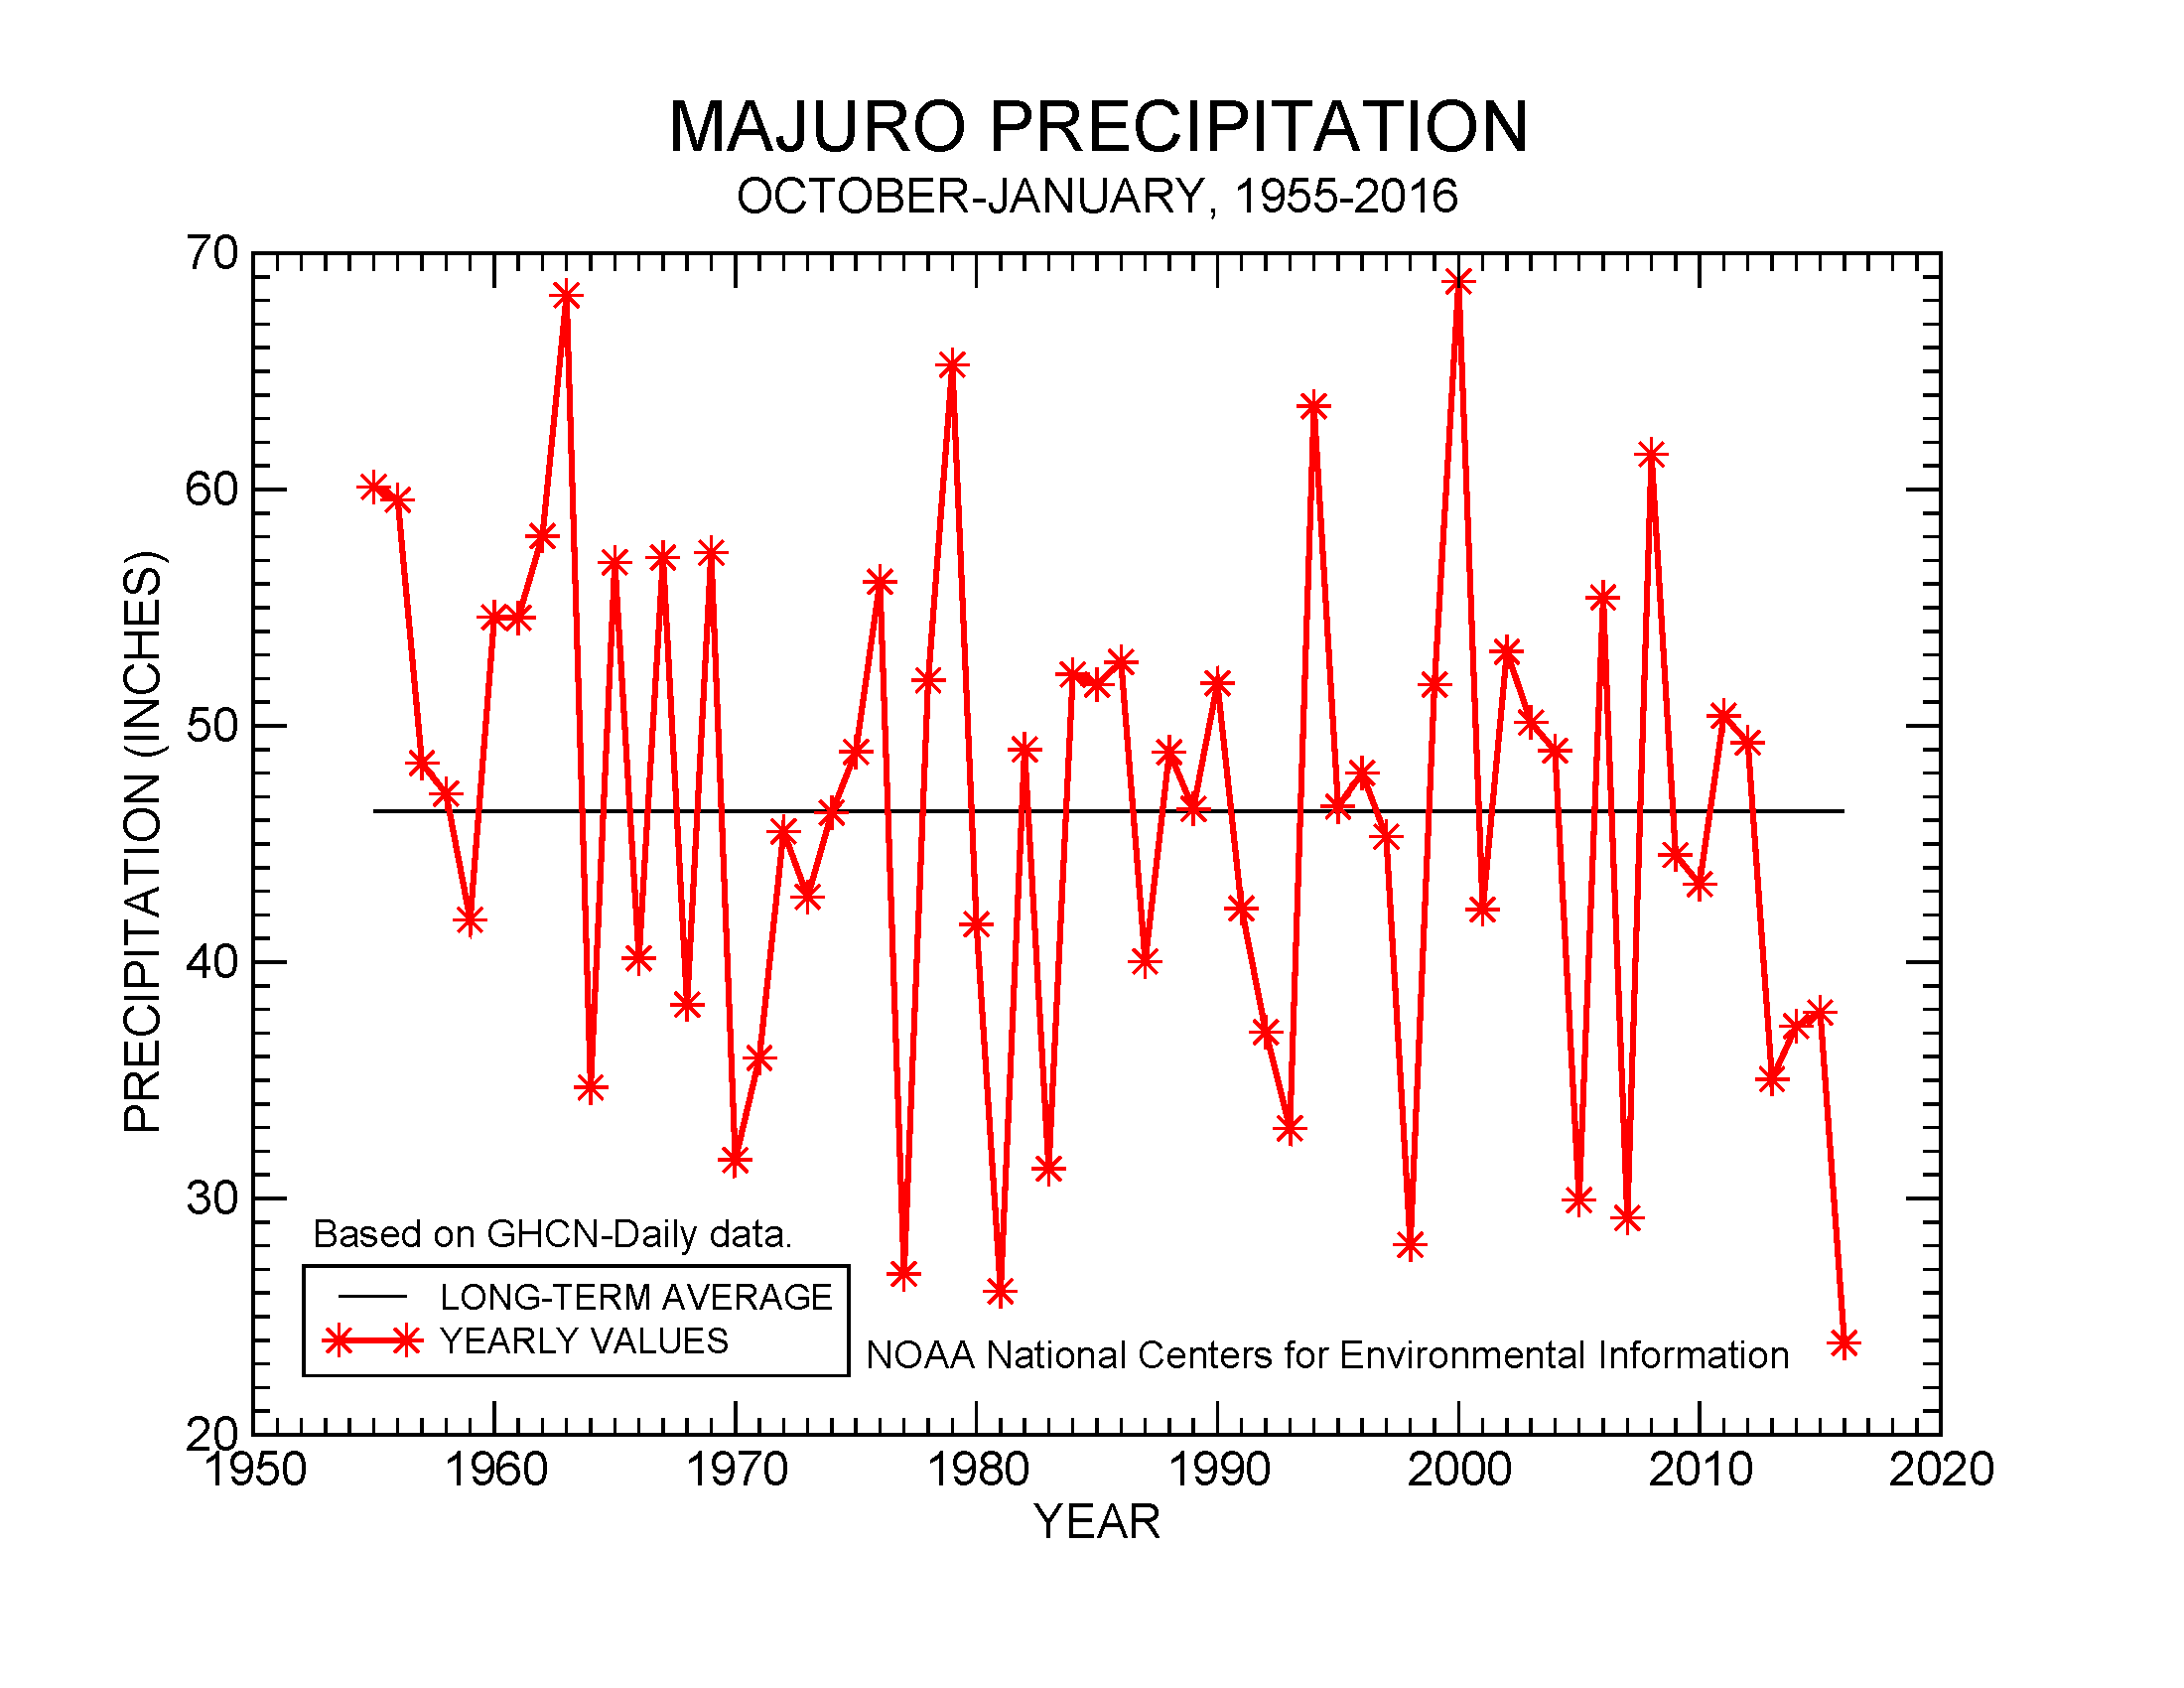 October-January precipitation for Majuro, 1955-2016